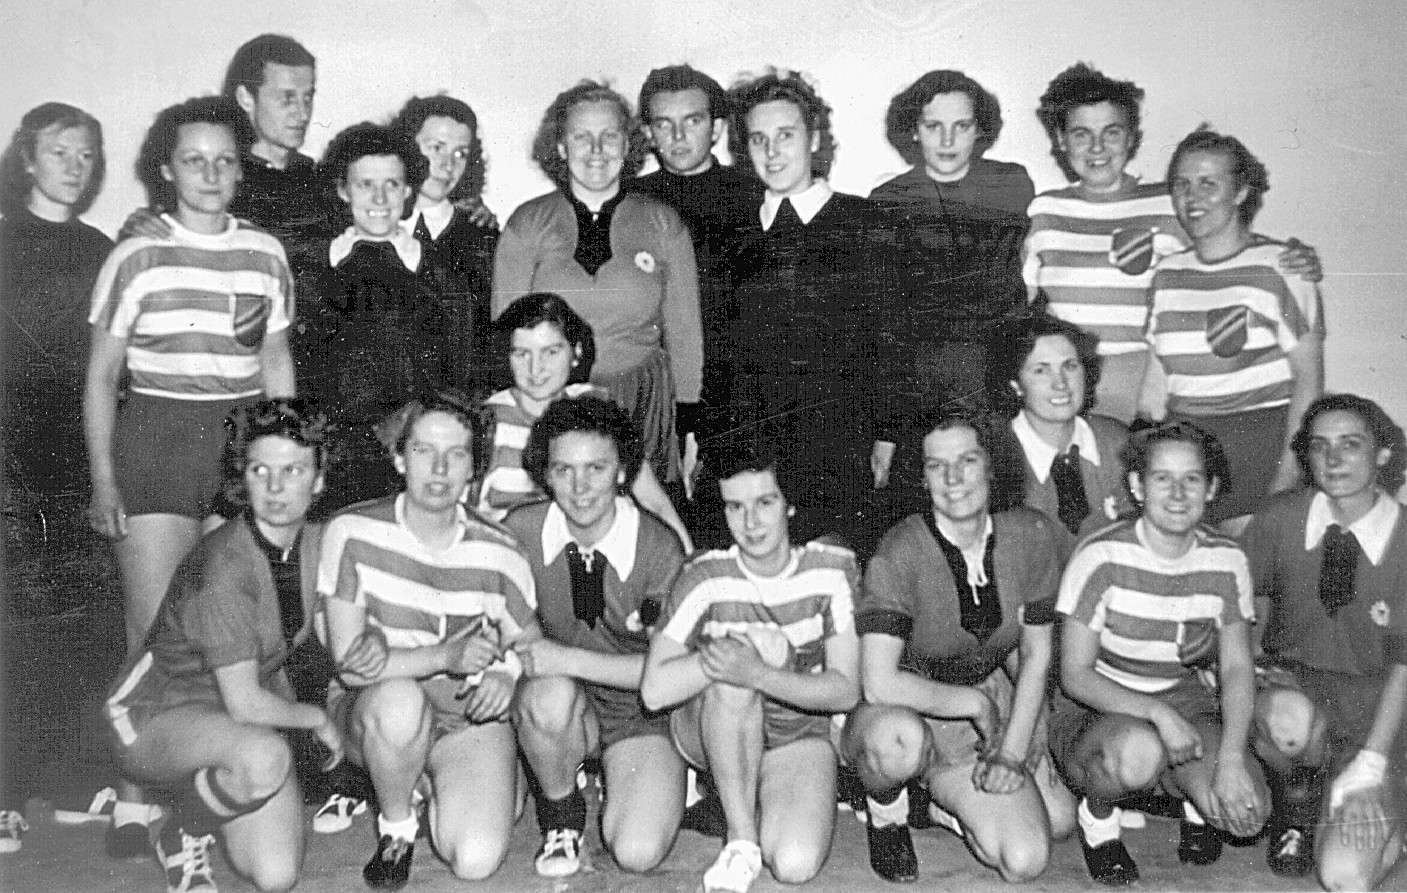 60 Jahre Volleyball in Greifswald (1950-er) Volleyball in Greifswald (eine kurze Einführung) Volleyball wird weltweit seit 1896 gespielt.